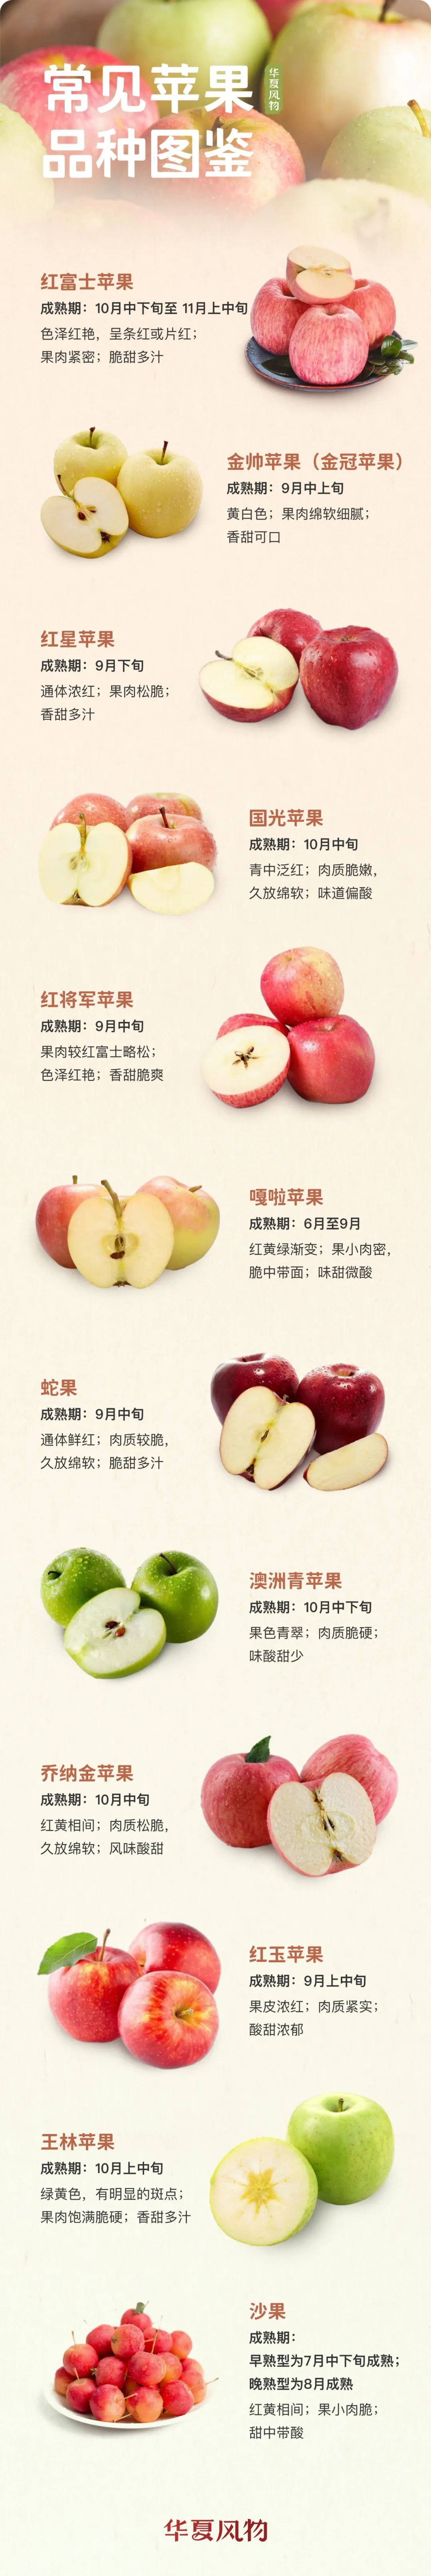 常见苹果品种图鉴 ©️华夏风物